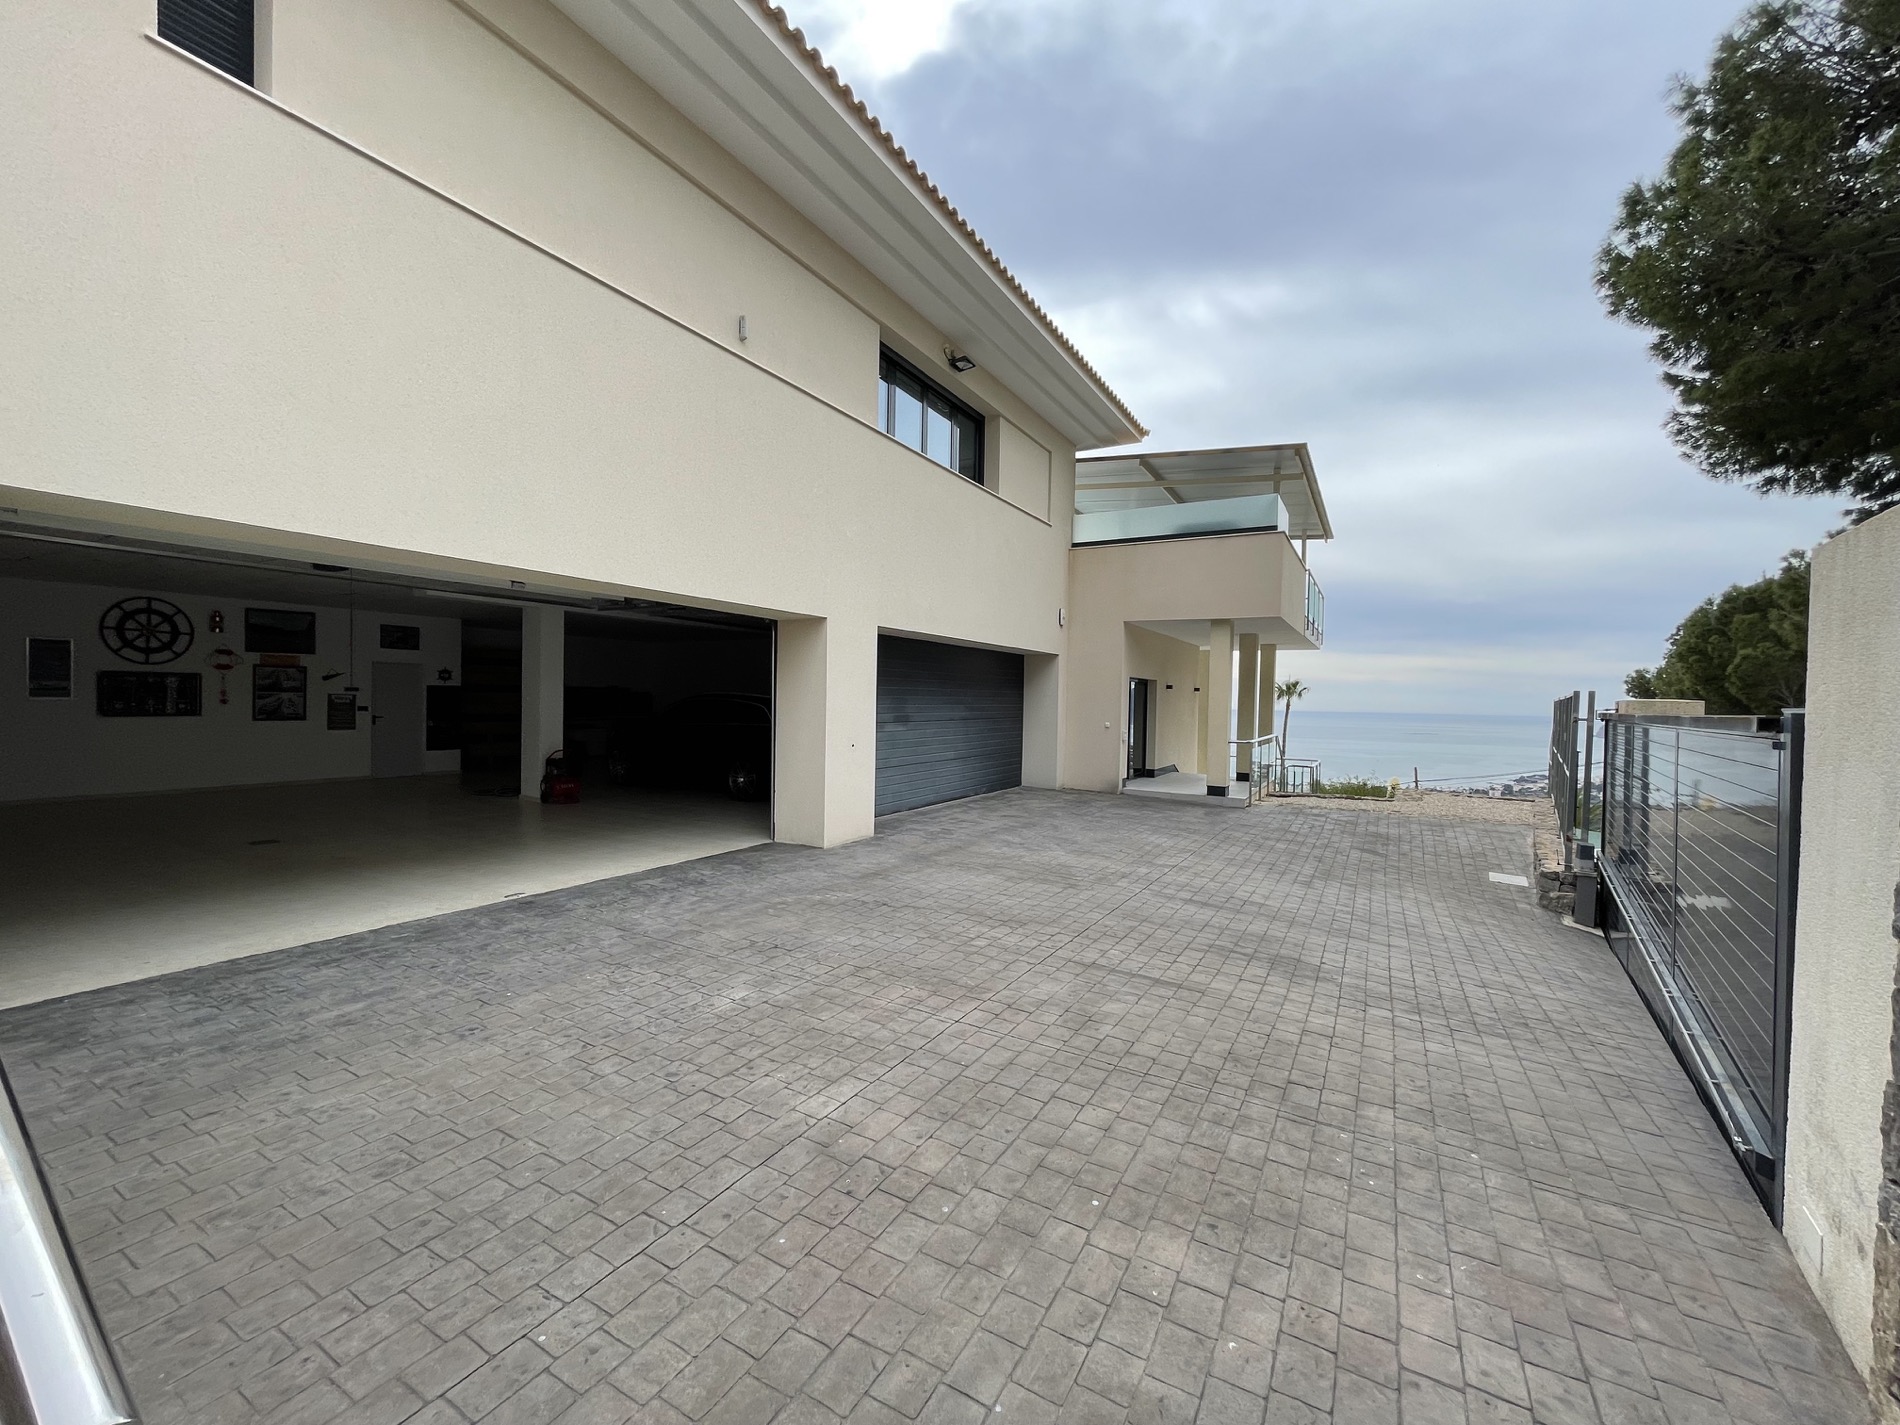 Chalet estilo moderno mediterráneo con vistas al mar en Sierra Altea